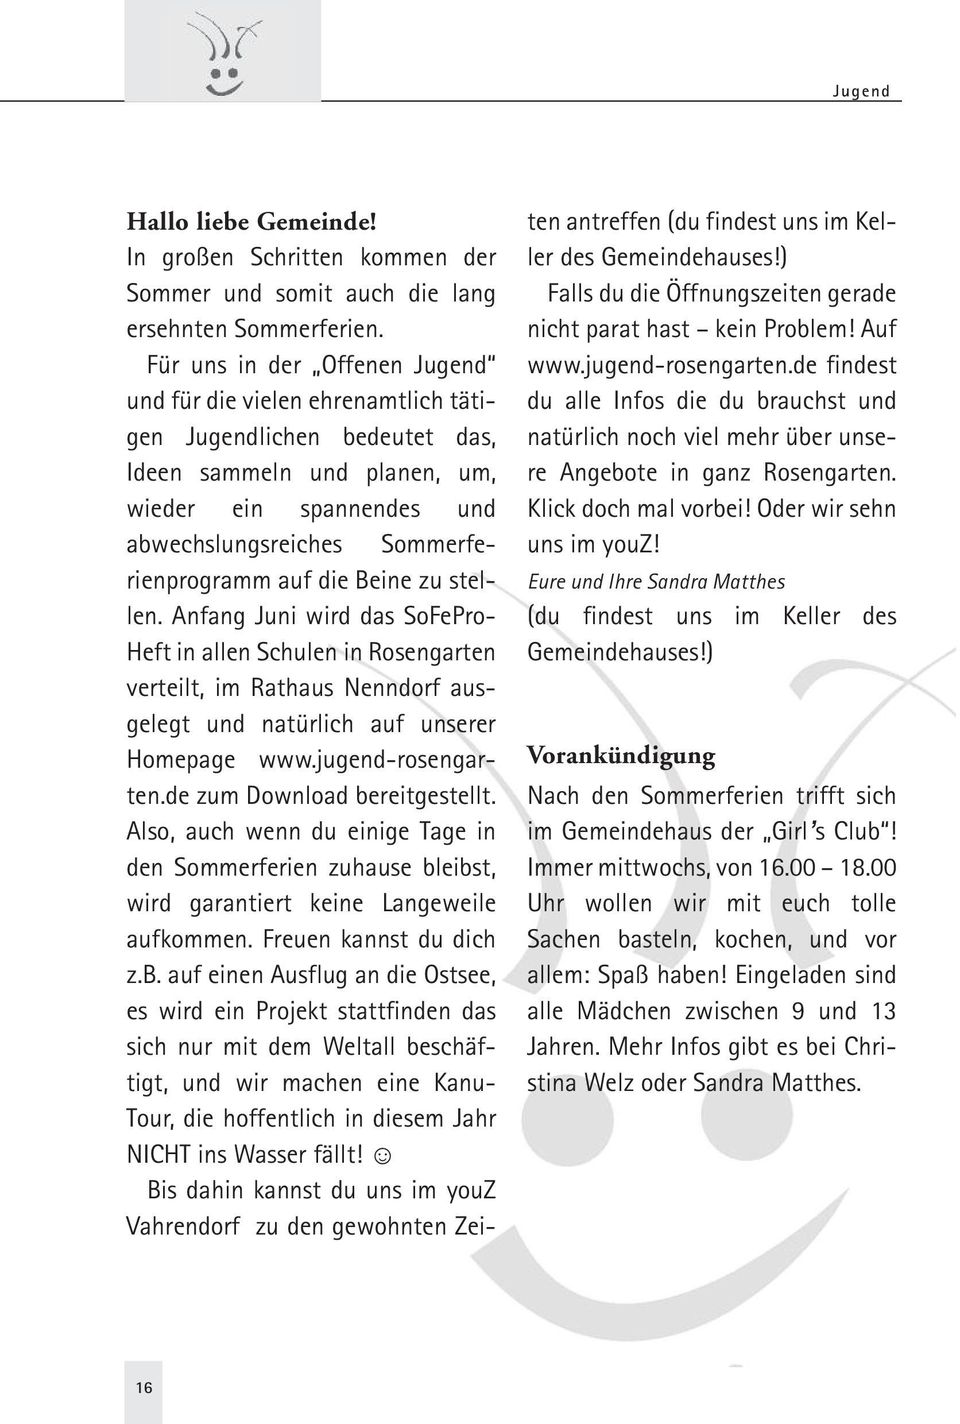 die Beine zu stellen. Anfang Juni wird das SoFePro- Heft in allen Schulen in Rosengarten verteilt, im Rathaus Nenndorf ausgelegt und natürlich auf unserer Homepage www.jugend-rosengarten.